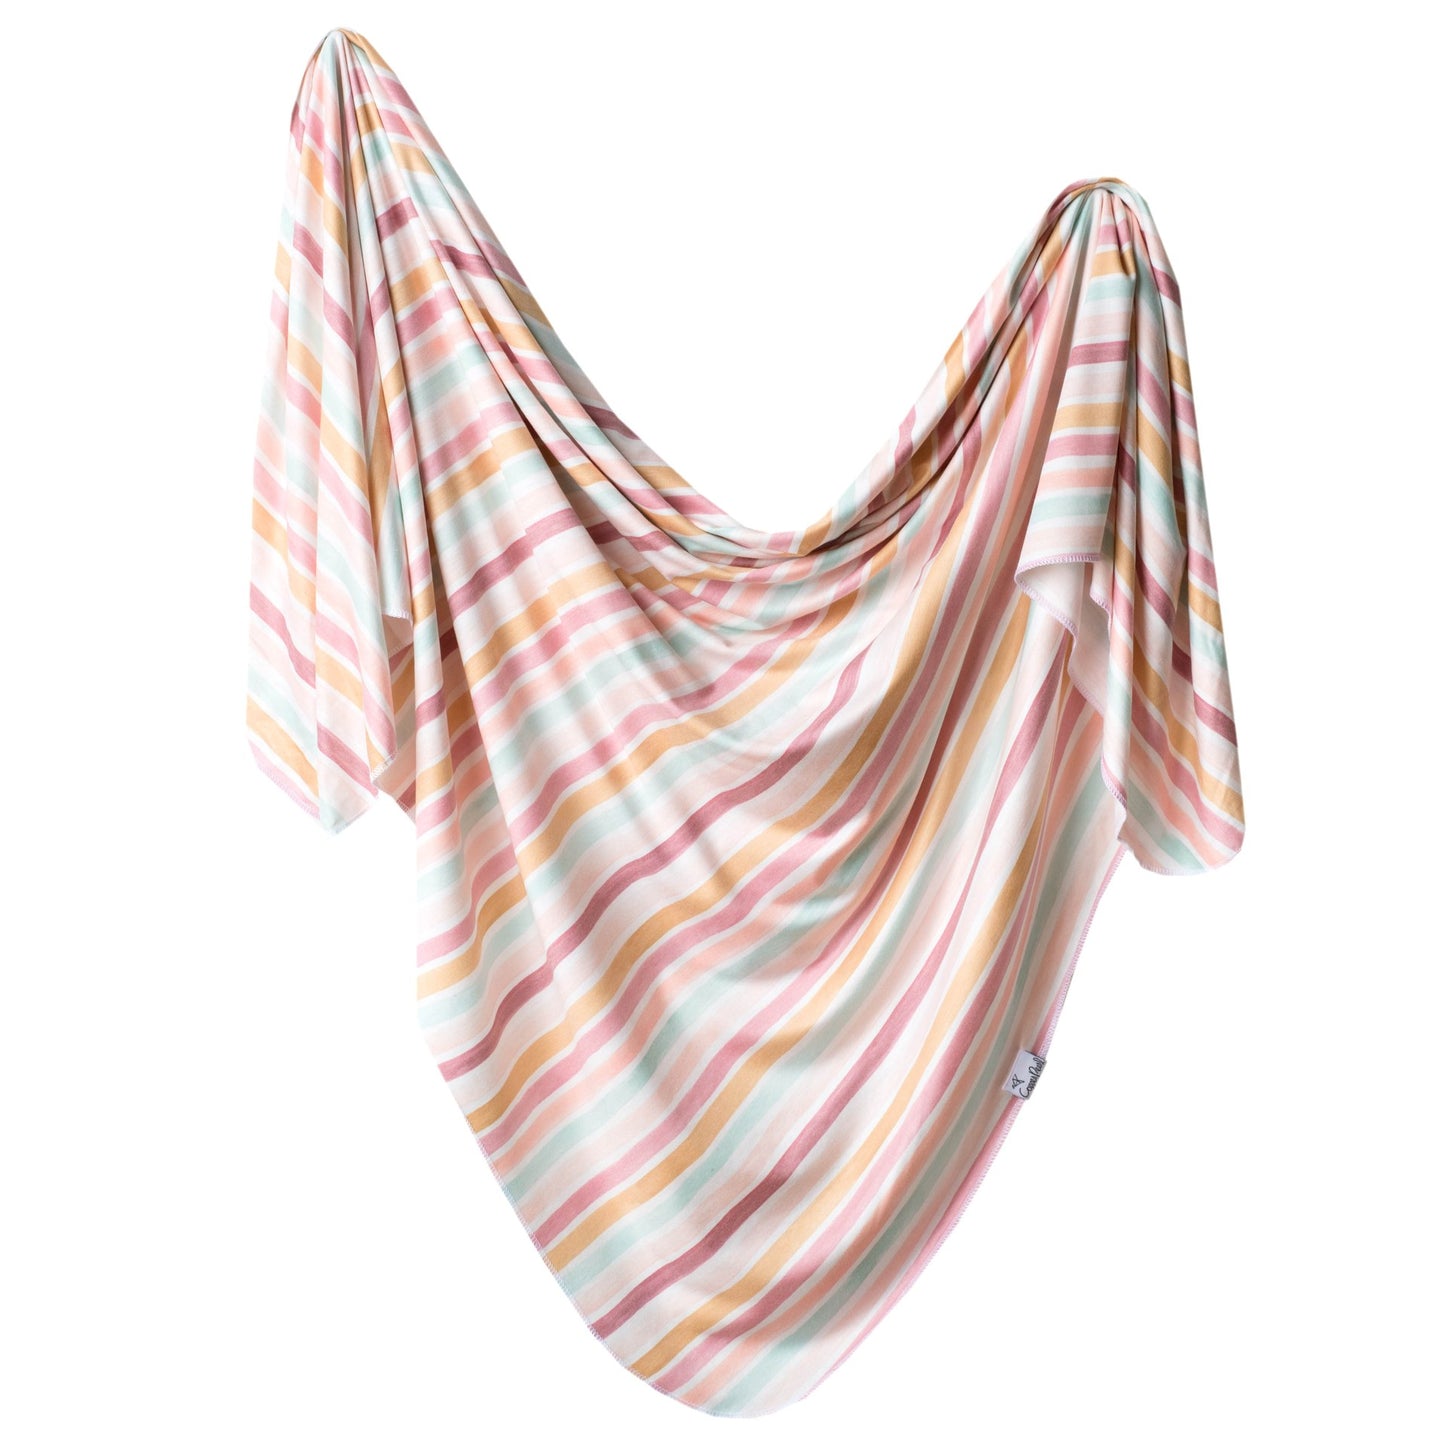 Copper Pearl - Single Knit Blankets